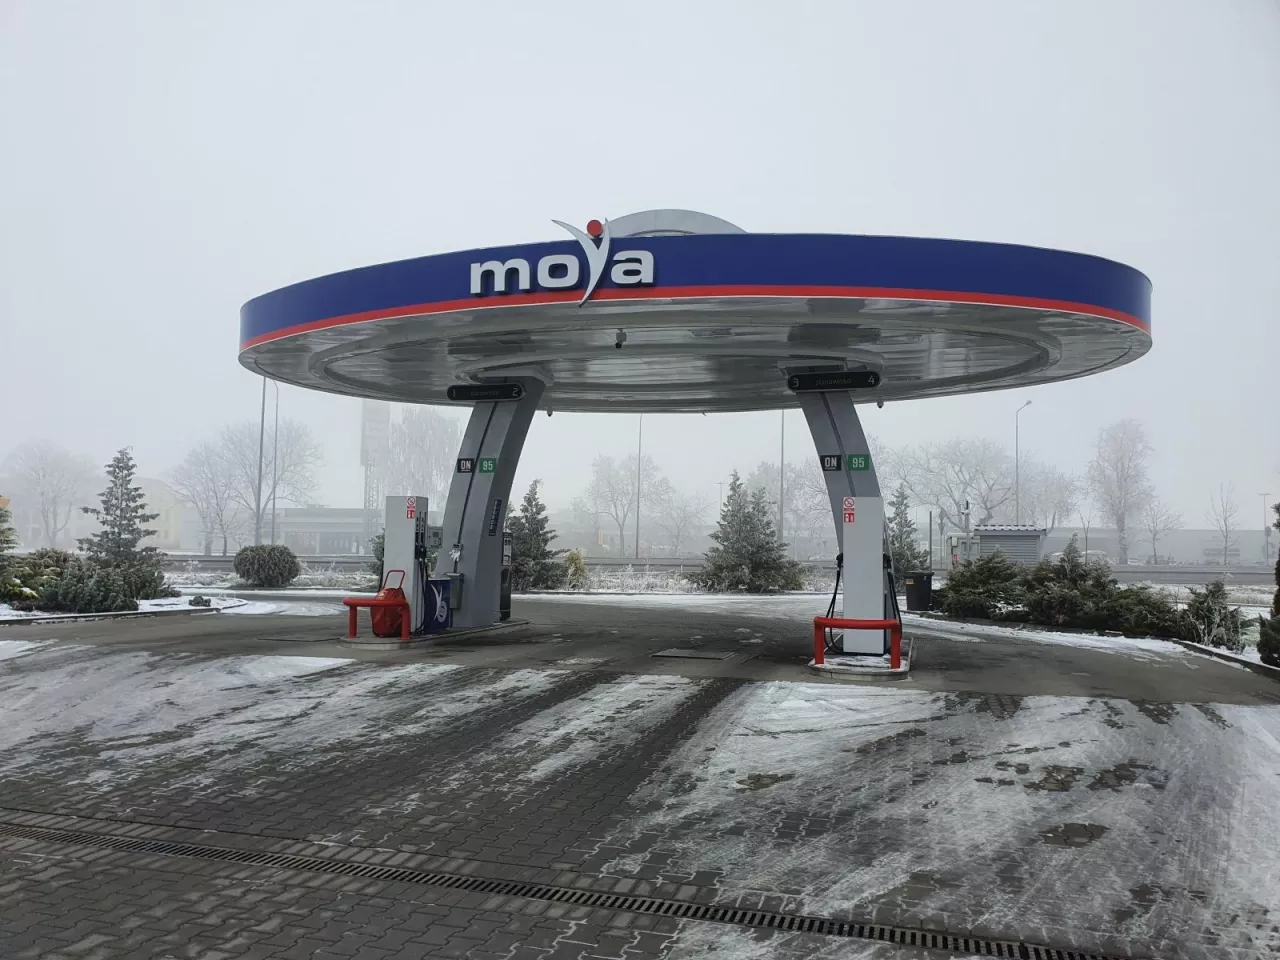 Stacja paliw Moya (fot. wiadomoscihandlowe.pl)